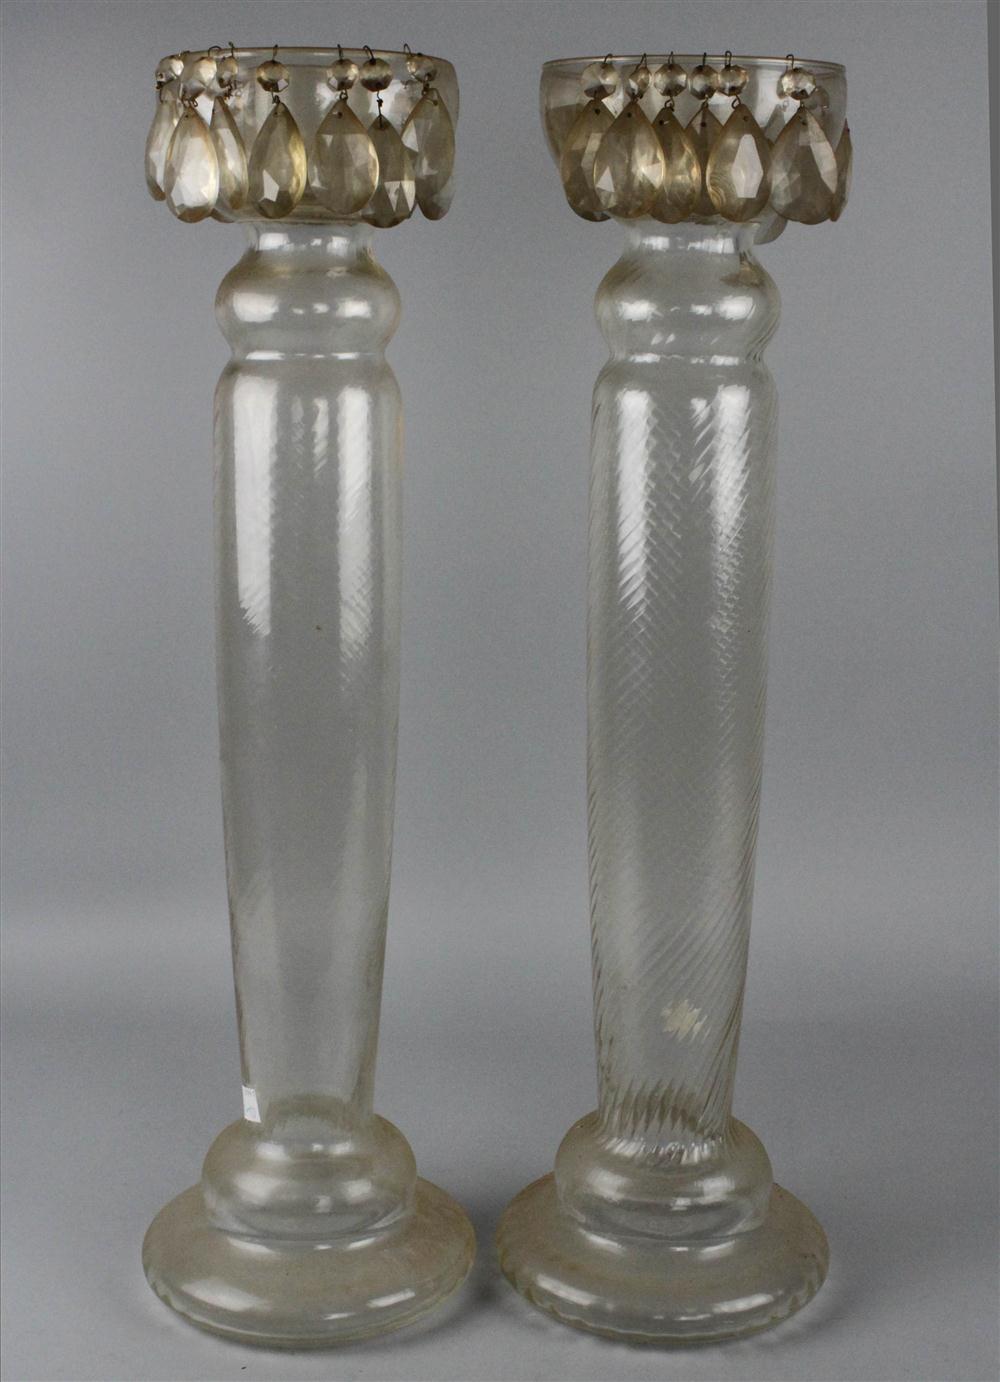 TWO MASSIVE GLASS CANDLEHOLDERS